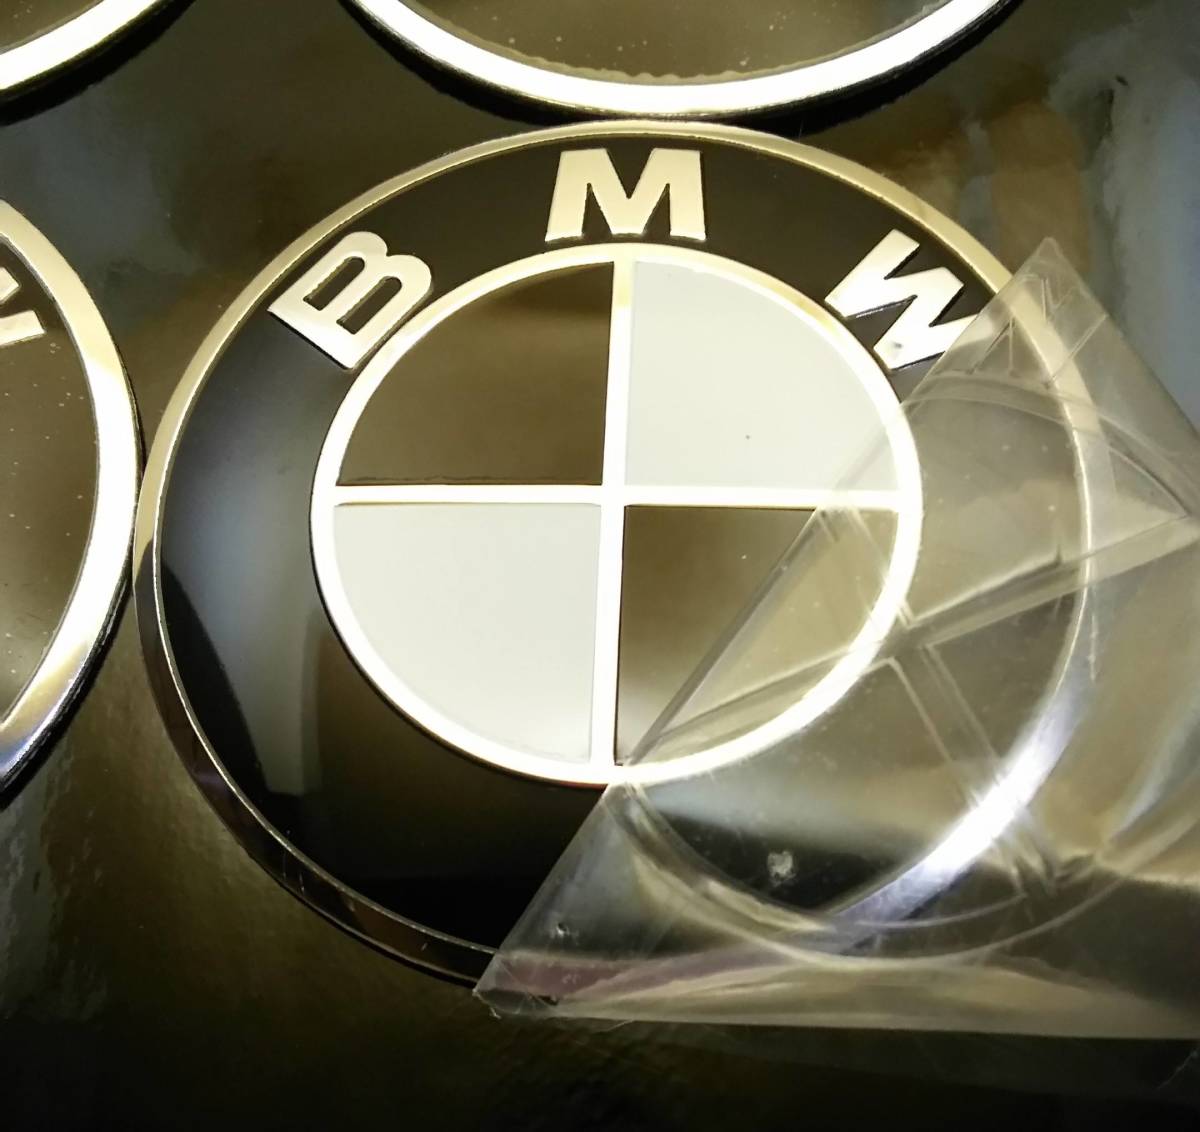  BMW 70mm 黒白 ステッカー センターキャップ 4こ X6 X2 ALPINA E46 E39 E36 F30 X5 F10 3シリーズ 5シリーズ 1シリーズ X1 7シリーズ X3の画像2